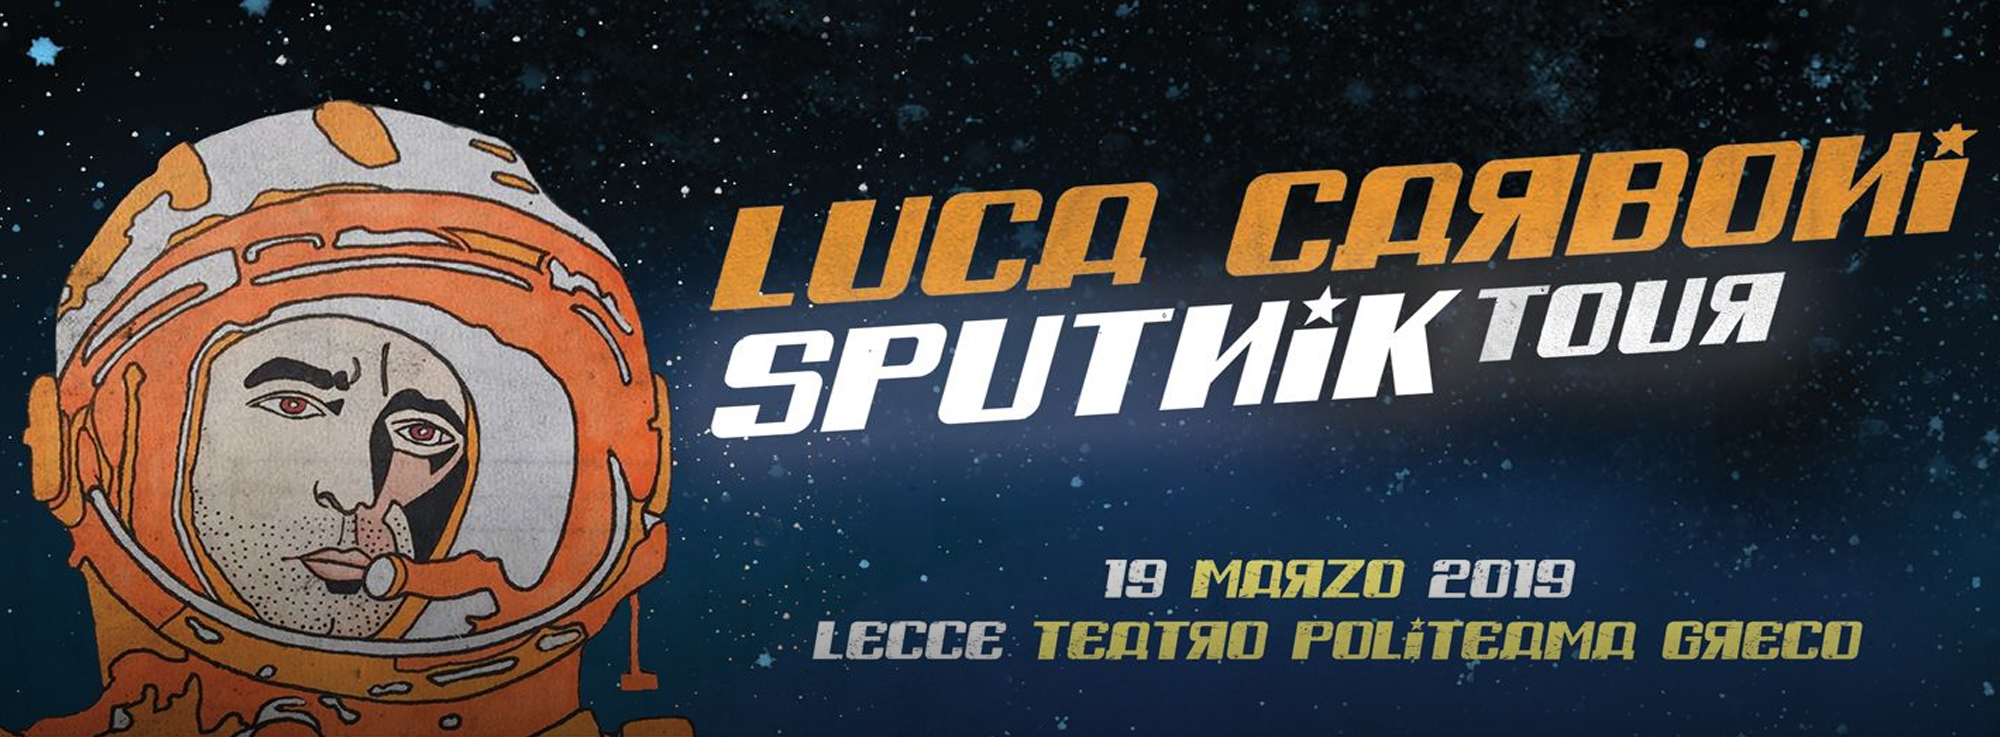 Lecce: Sputnik Tour